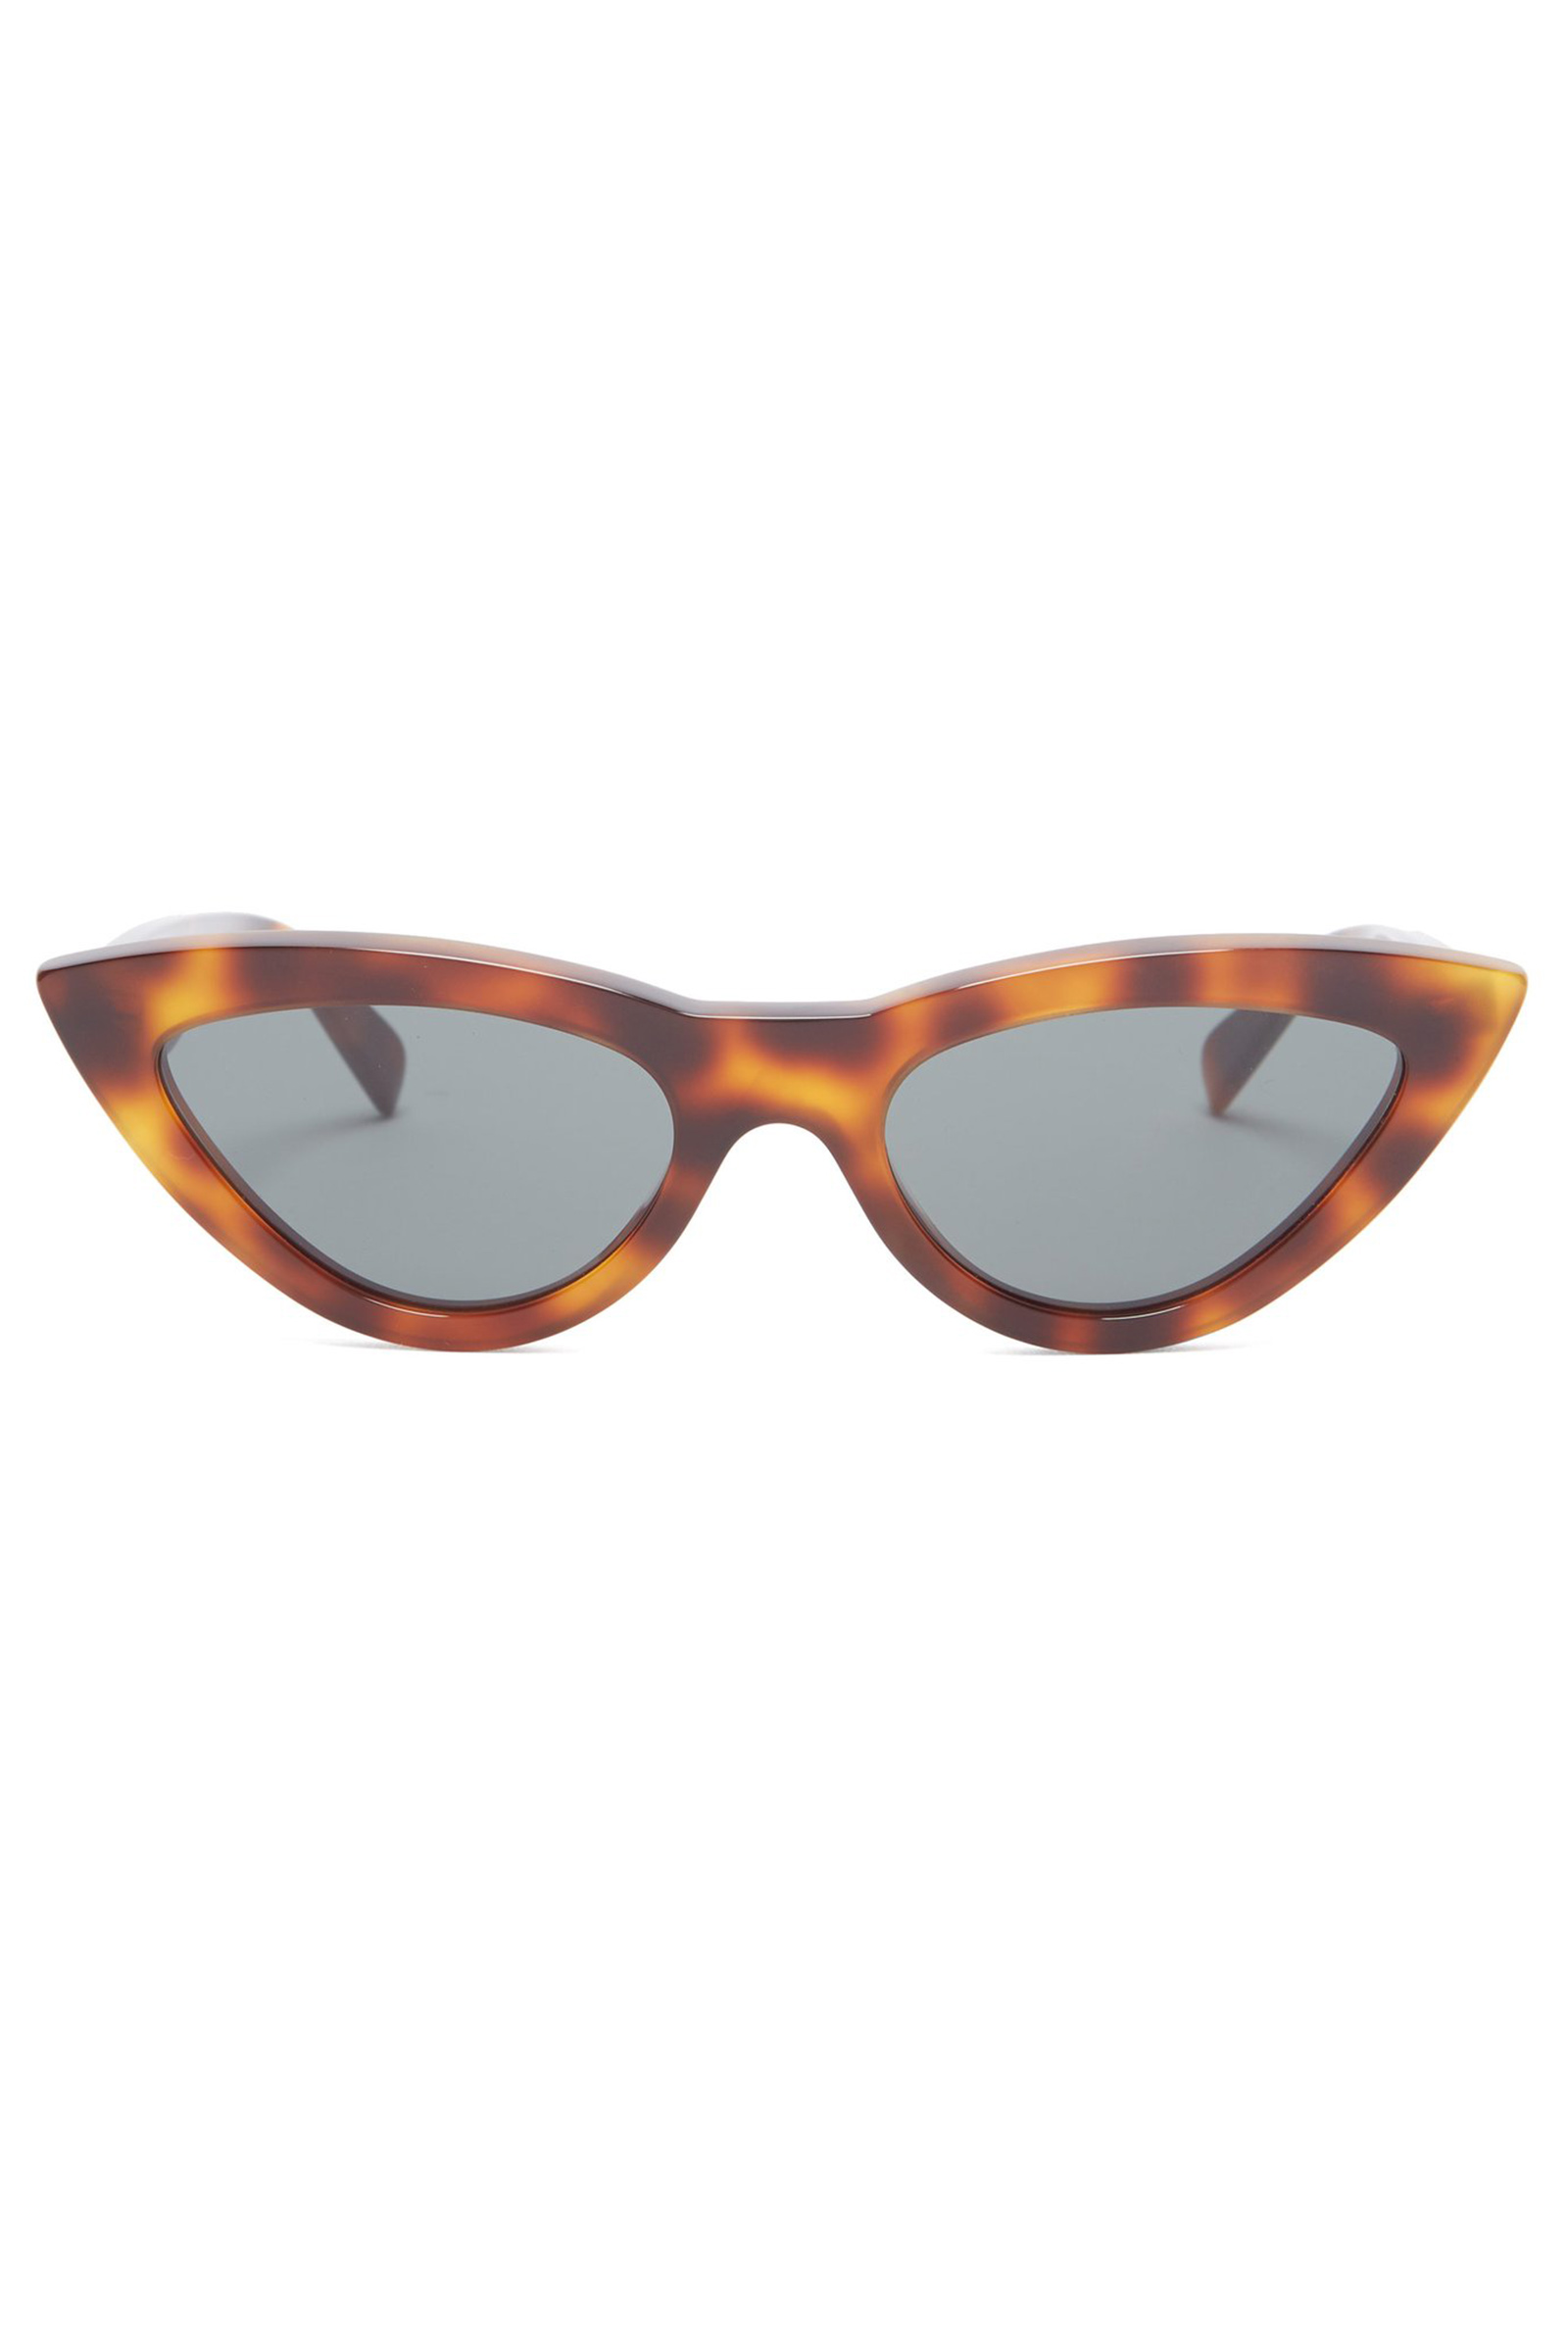 Objects Cat-eye tortoiseshell acetate sunglasses by Celine Eyewear ...